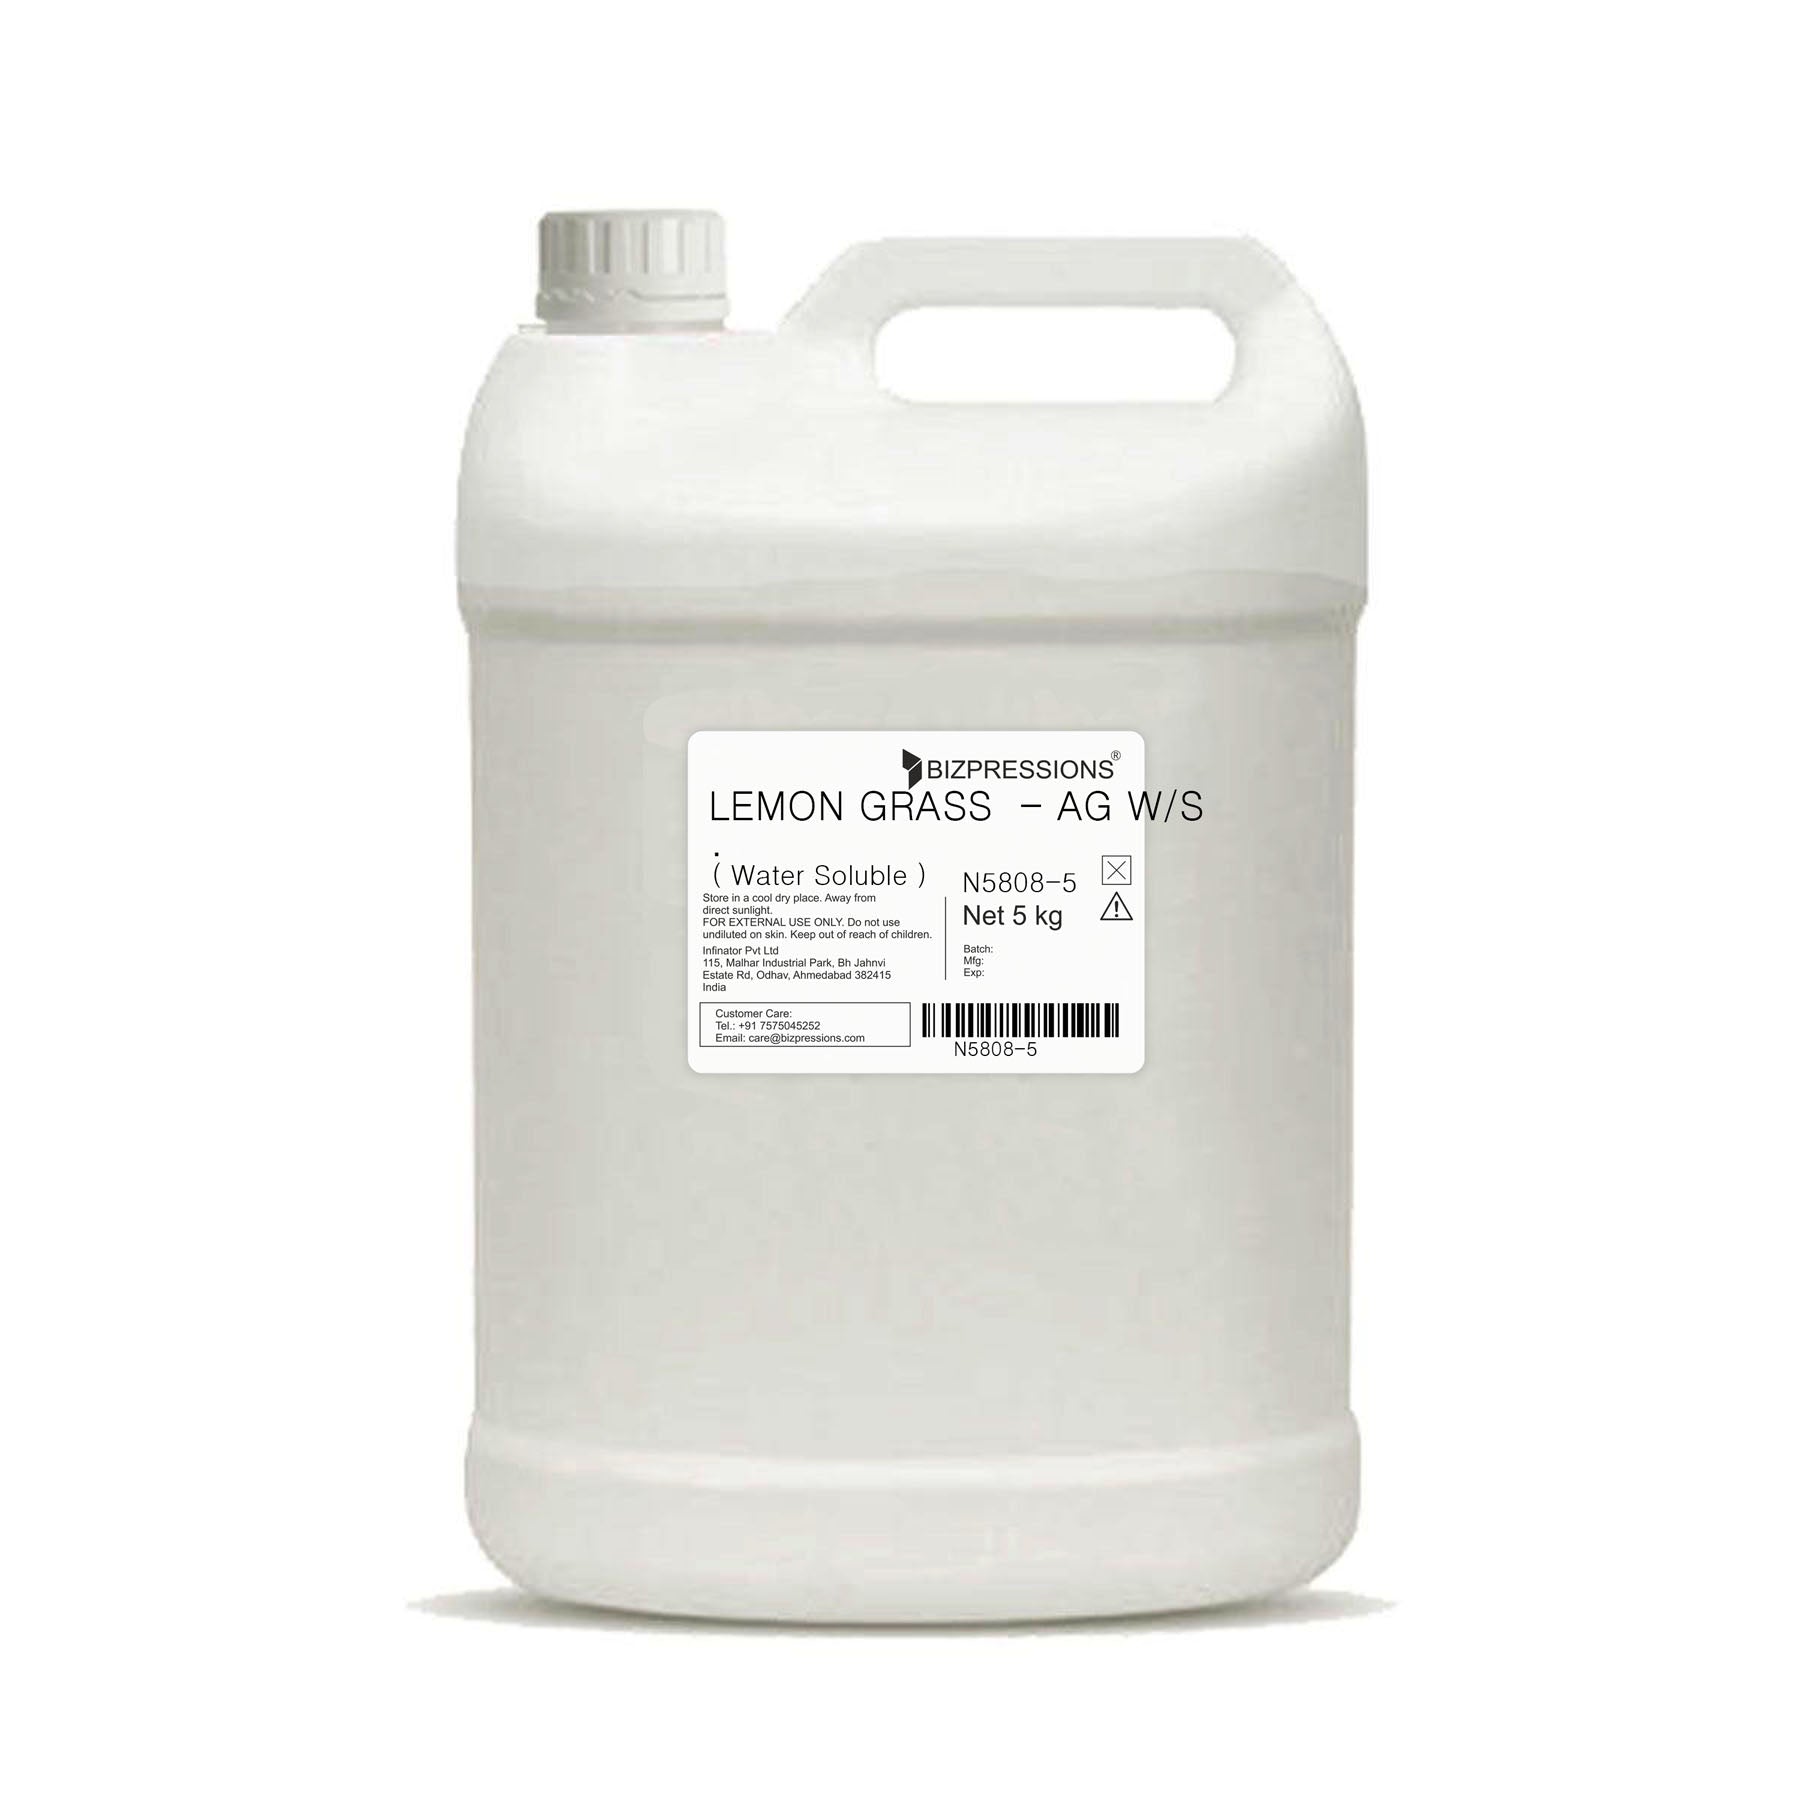 LEMON GRASS - AG. W/S - Fragrance ( Water Soluble ) - 5 kg